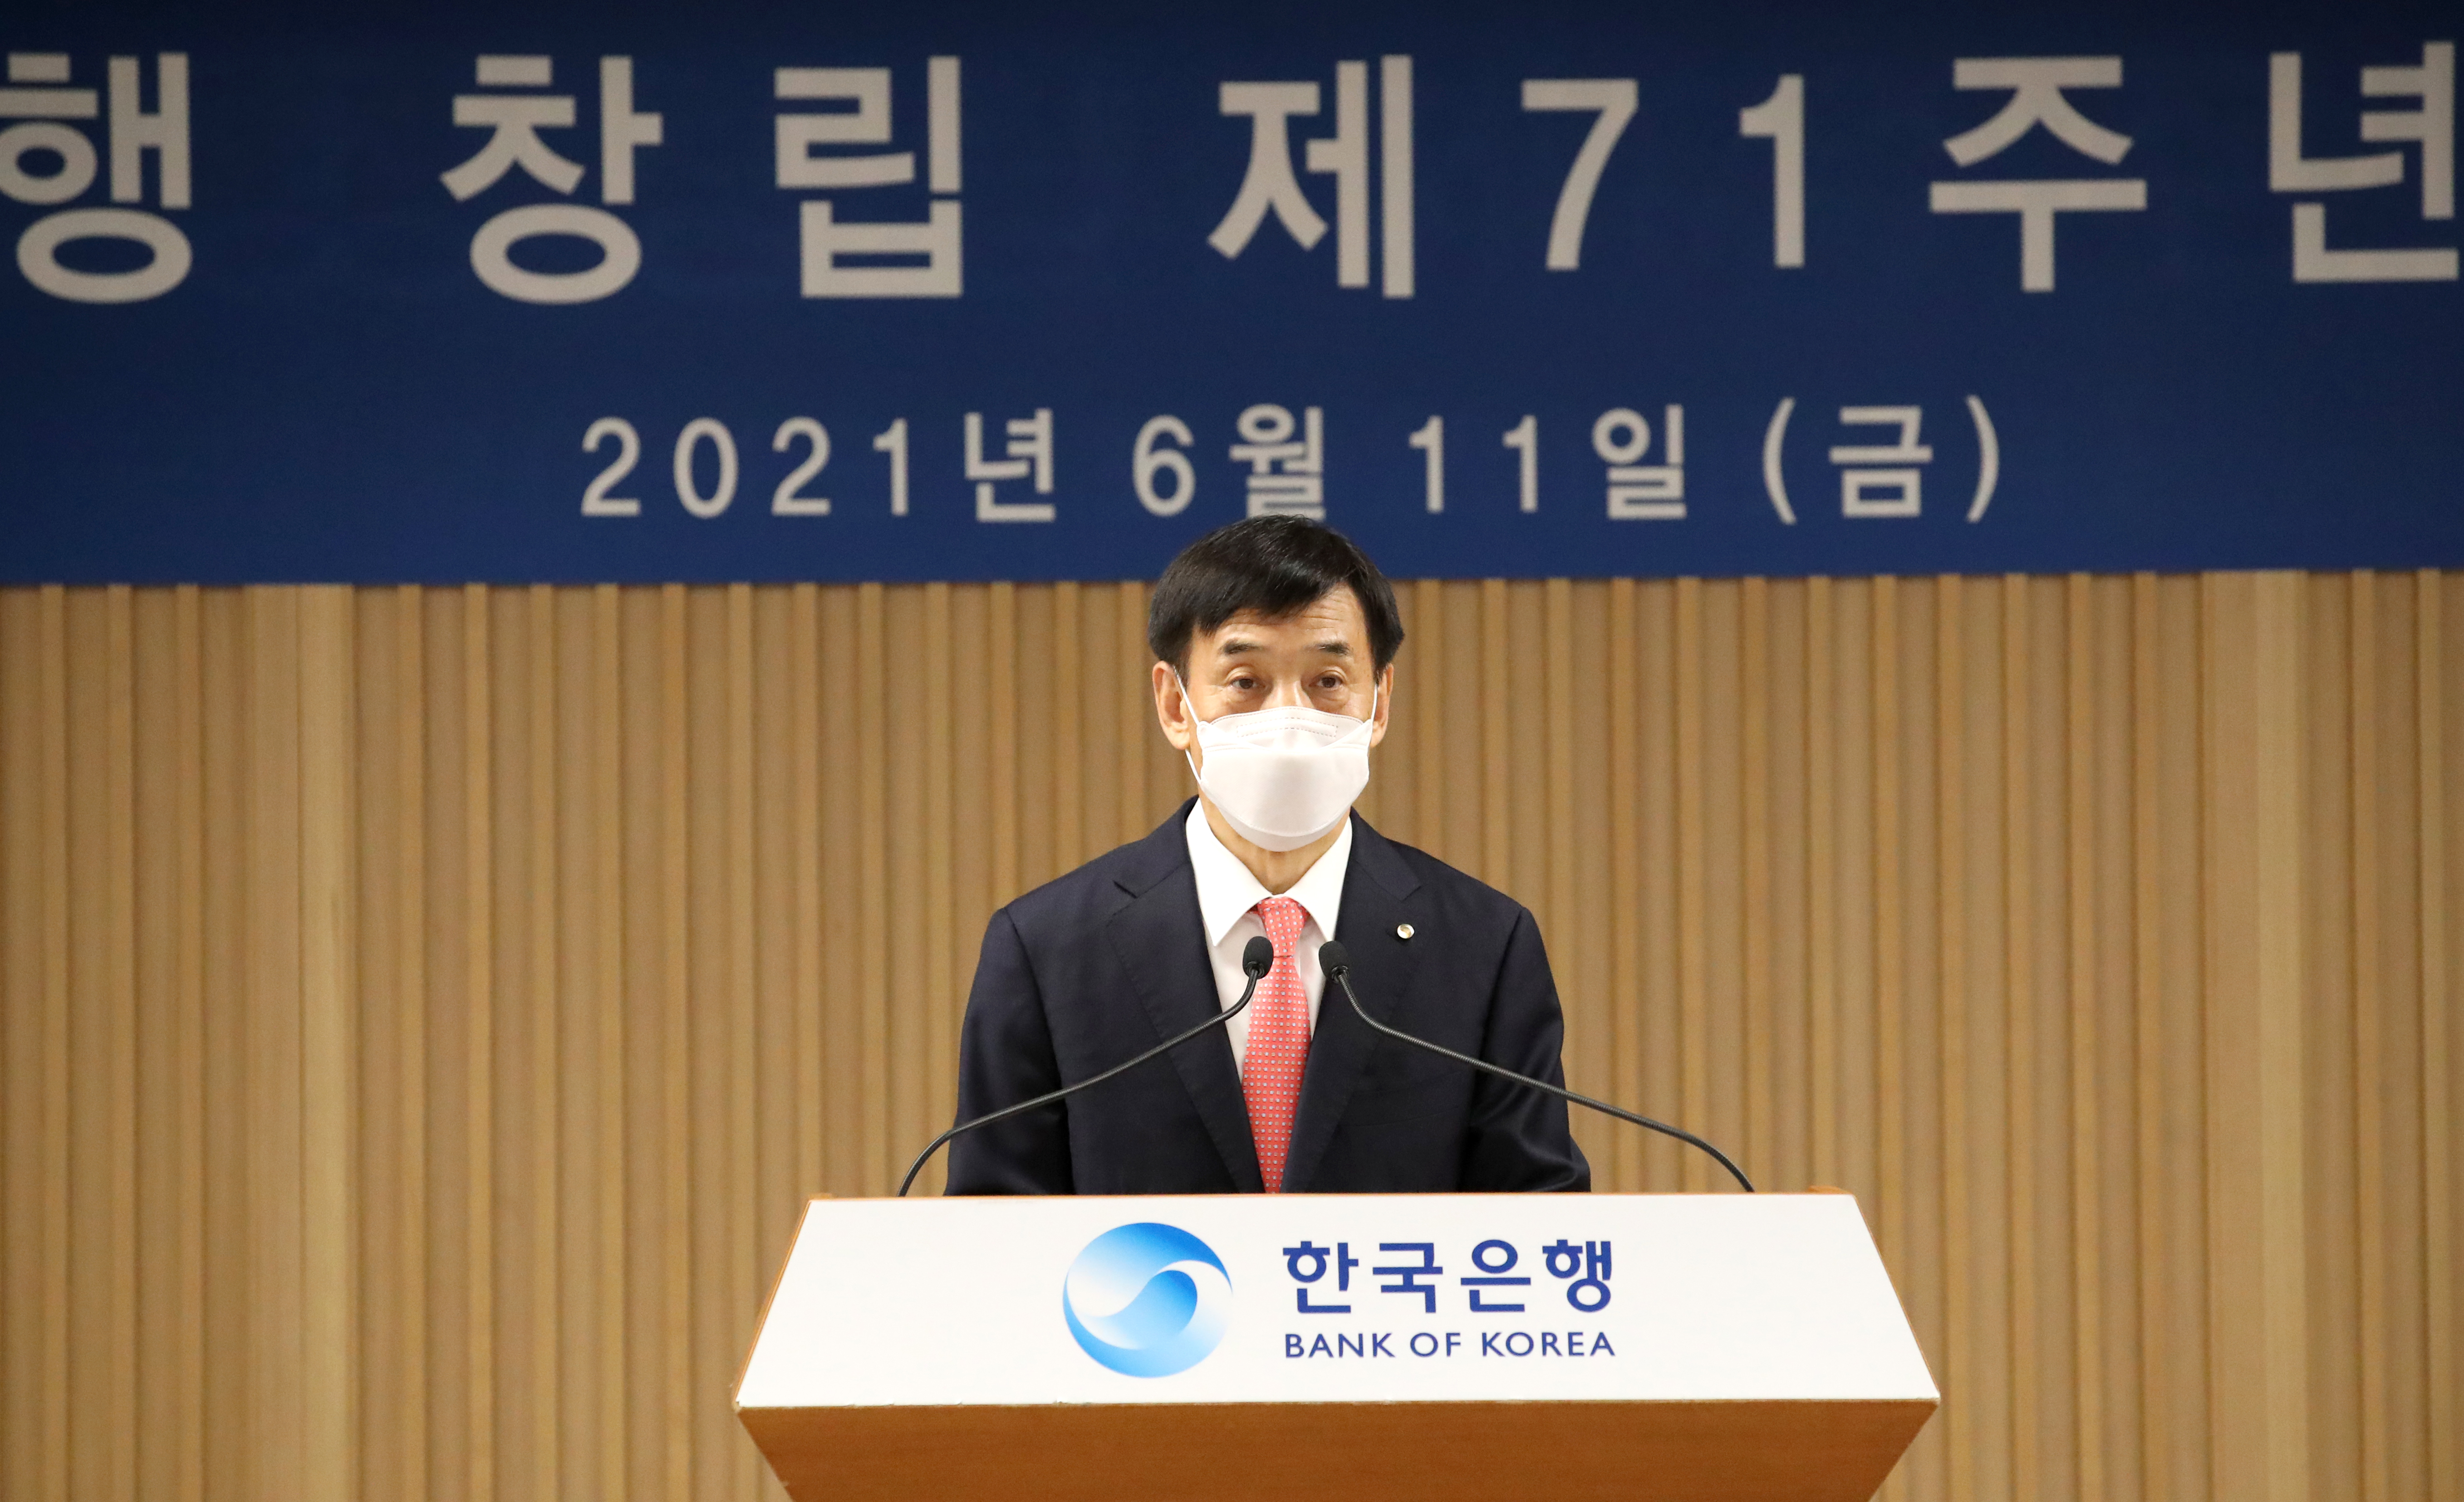 이주열 한국은행 총재가 11일 서울 중구 한국은행에서 한국은행 창립 제71주년 기념사를 낭독하고 있다.  한국은행 제공